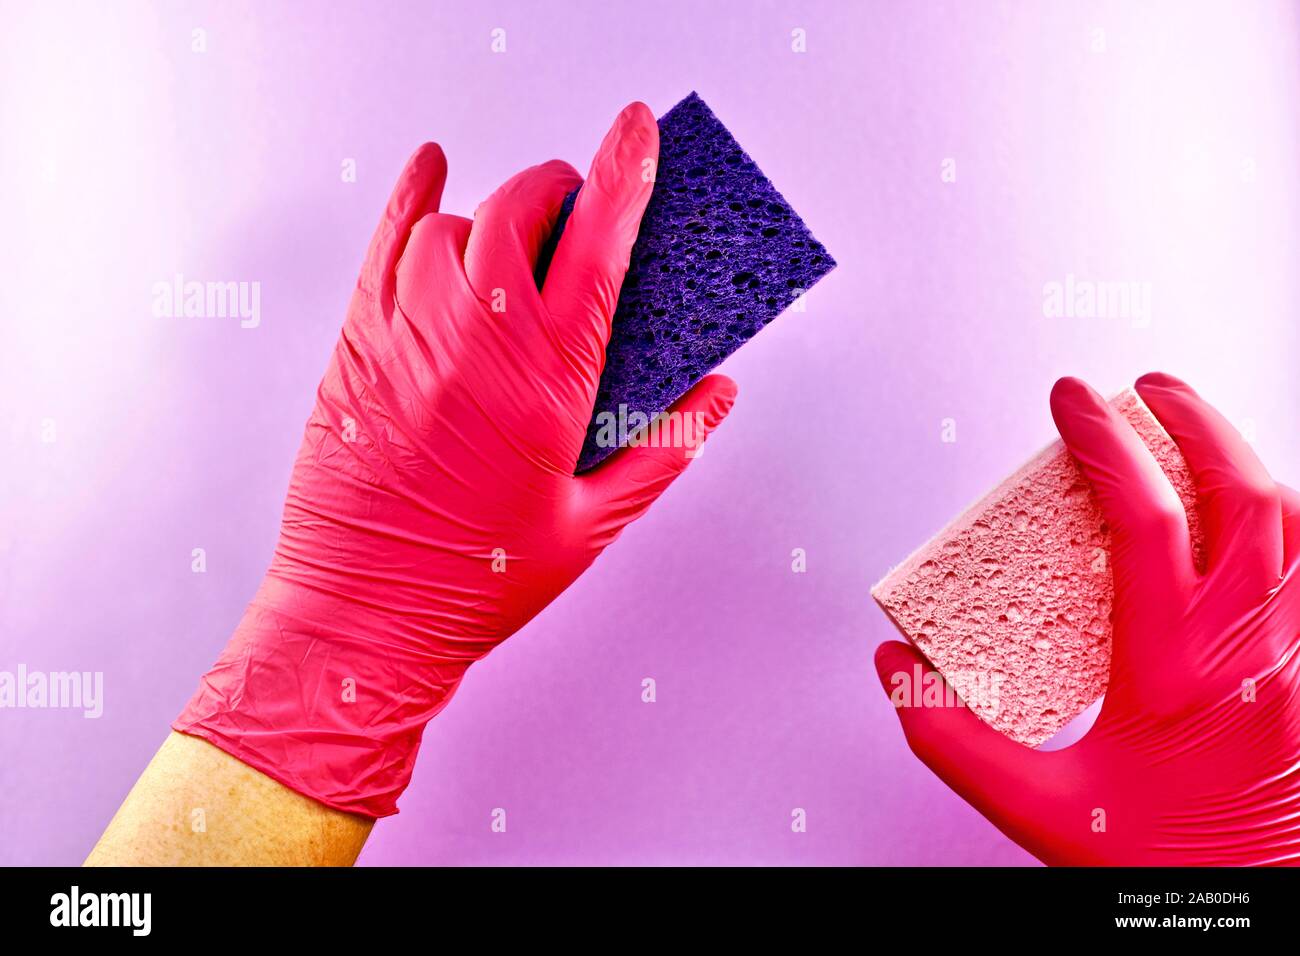 Dos esponjas de lavado de celulosa natural, paralelos entre sí, en las manos con guantes de goma. Foto de stock